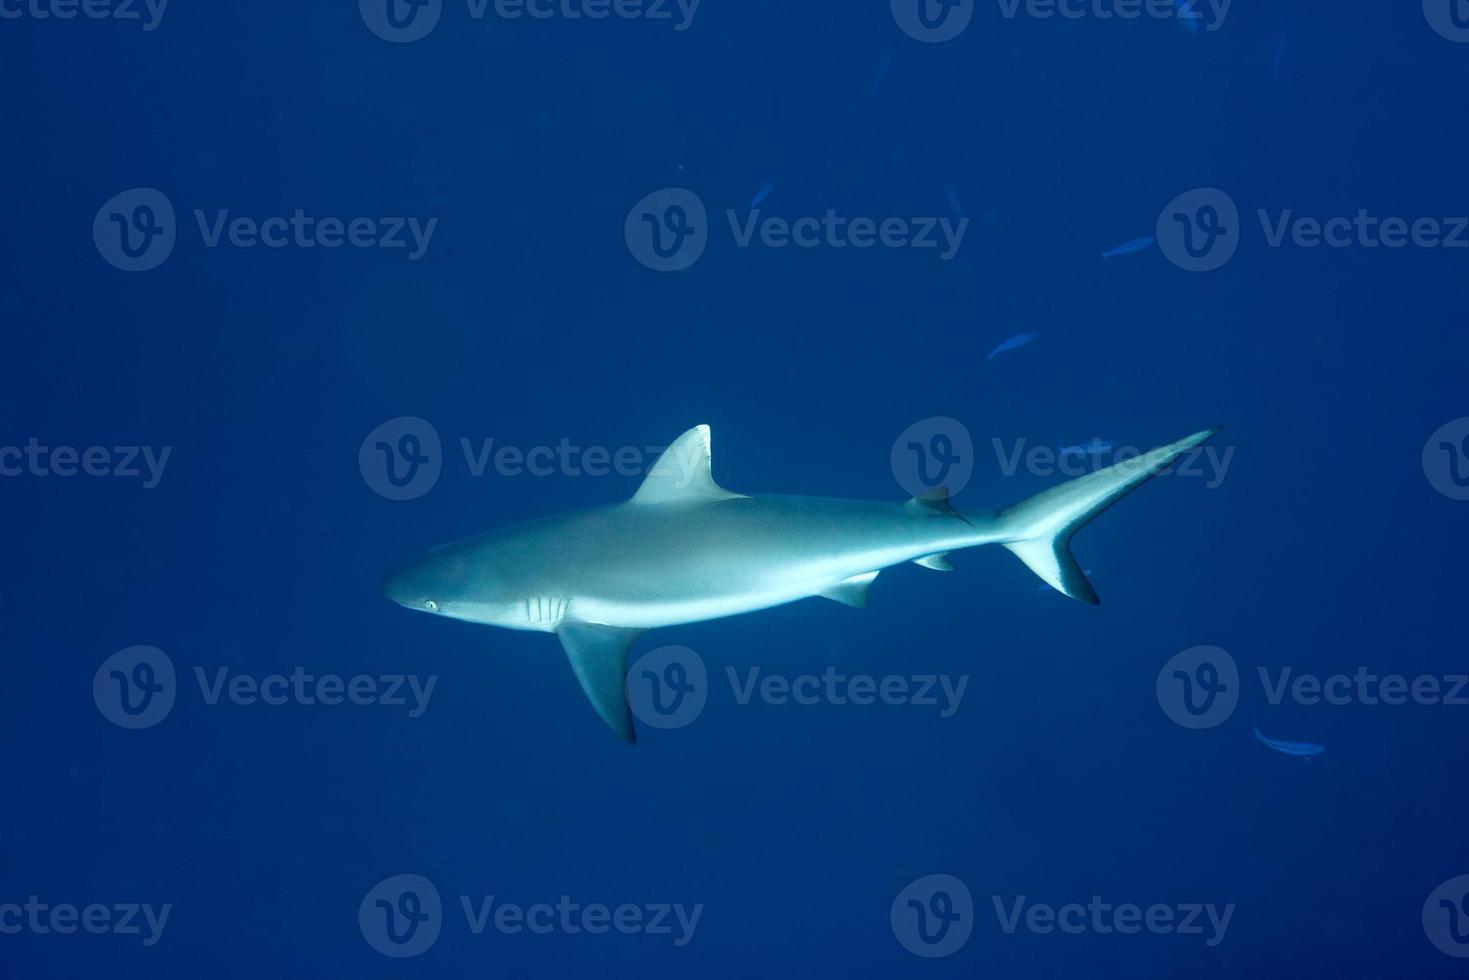 tubarão cinzento pronto para atacar debaixo d'água foto